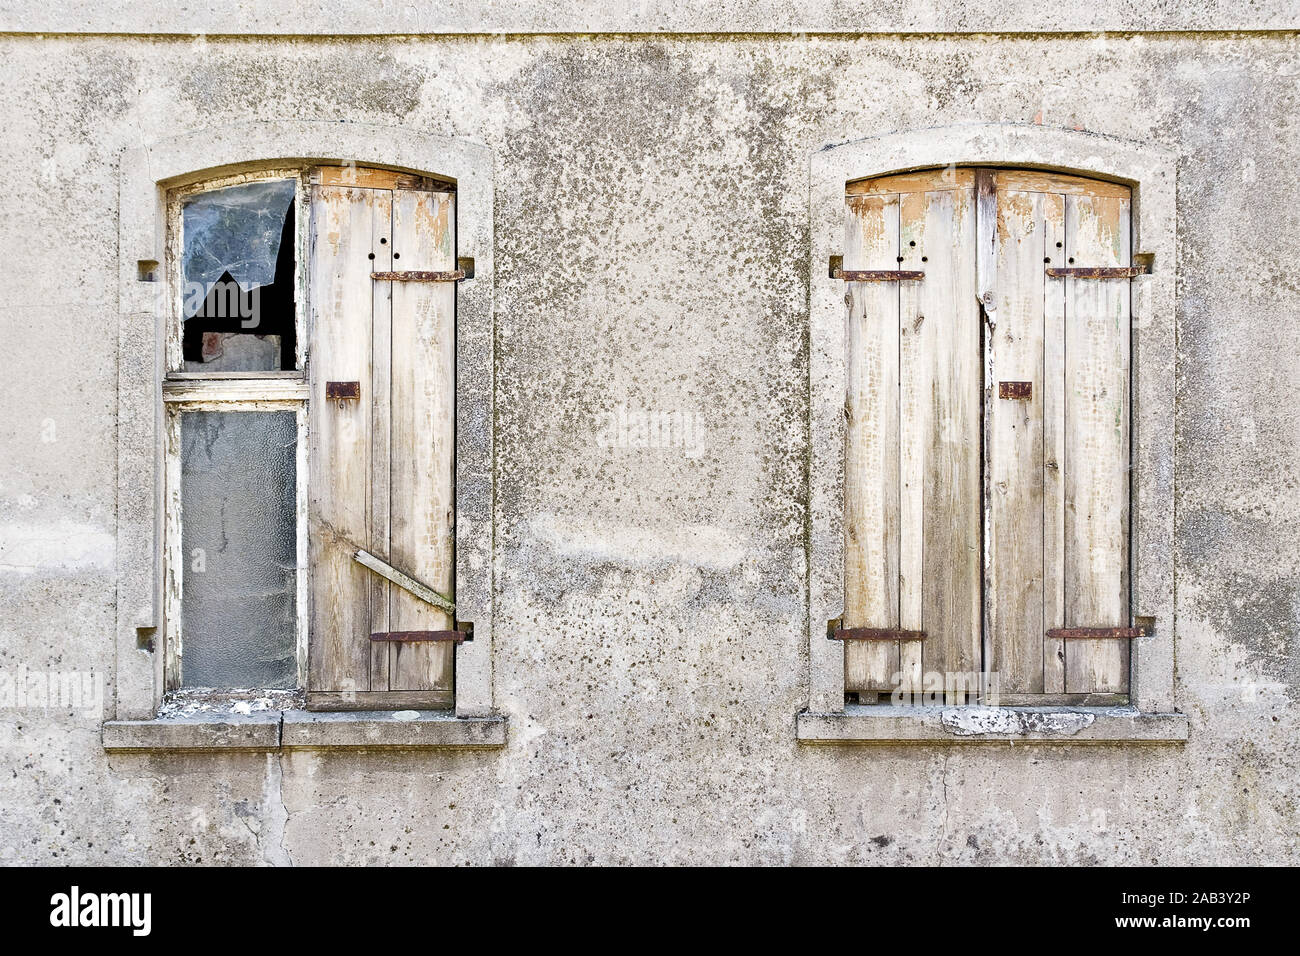 Fenster mit Fensterladen von einem alten Haus |Windows with shutters of an old house| Stock Photo